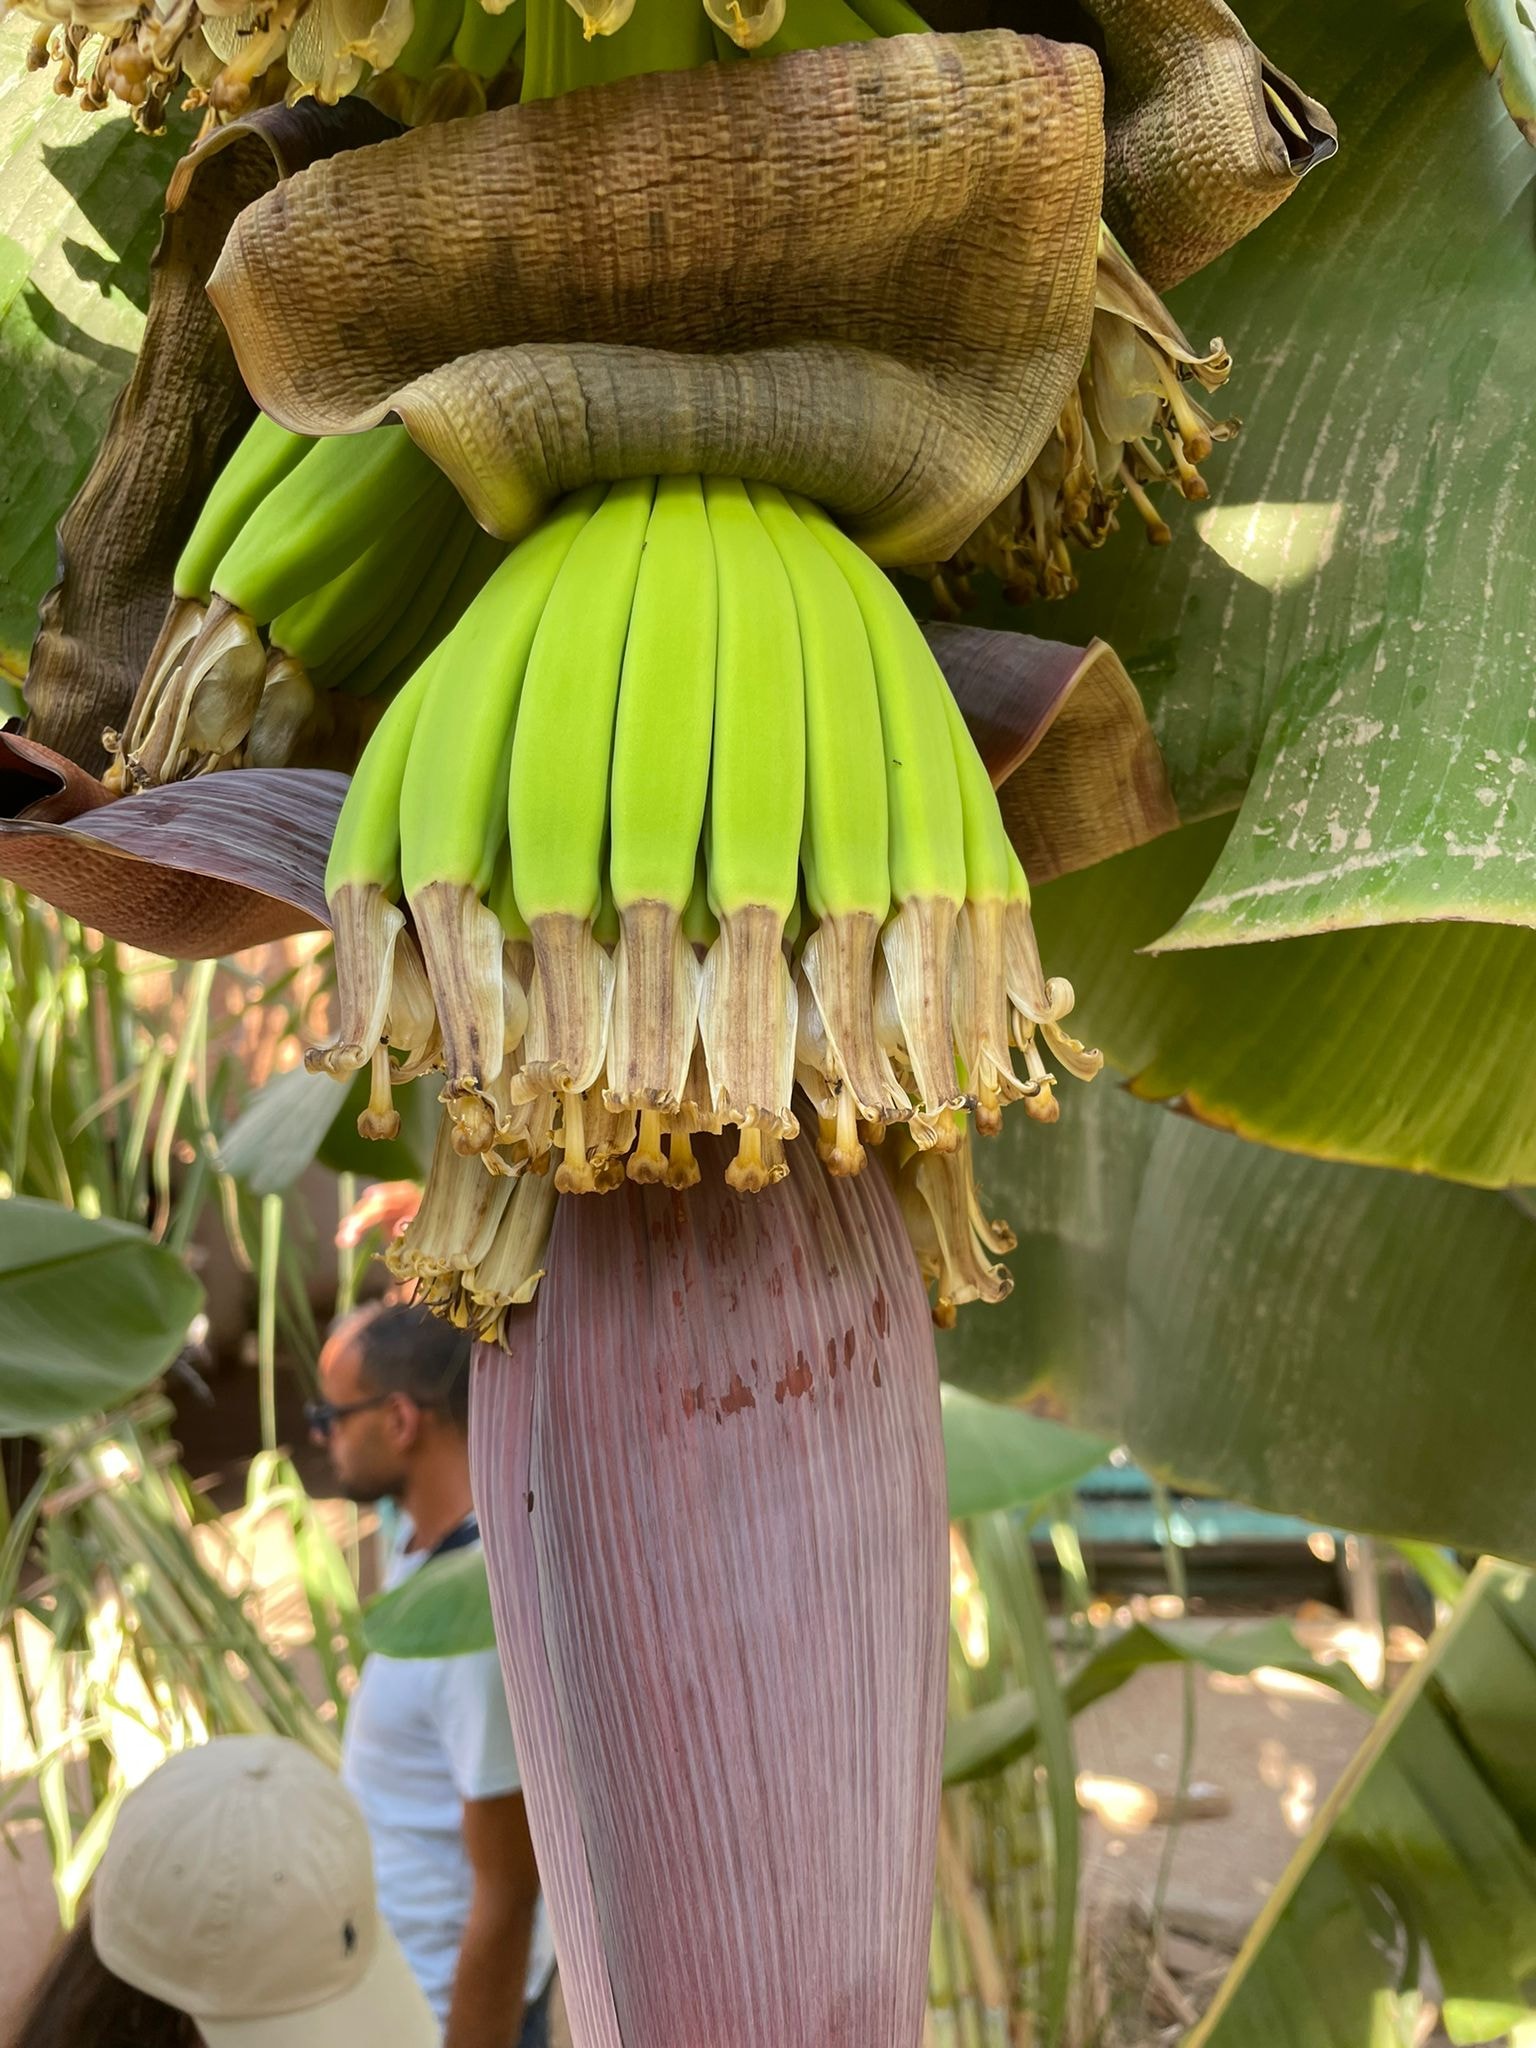 الموز على الأشجار قبل مرحلة النضج